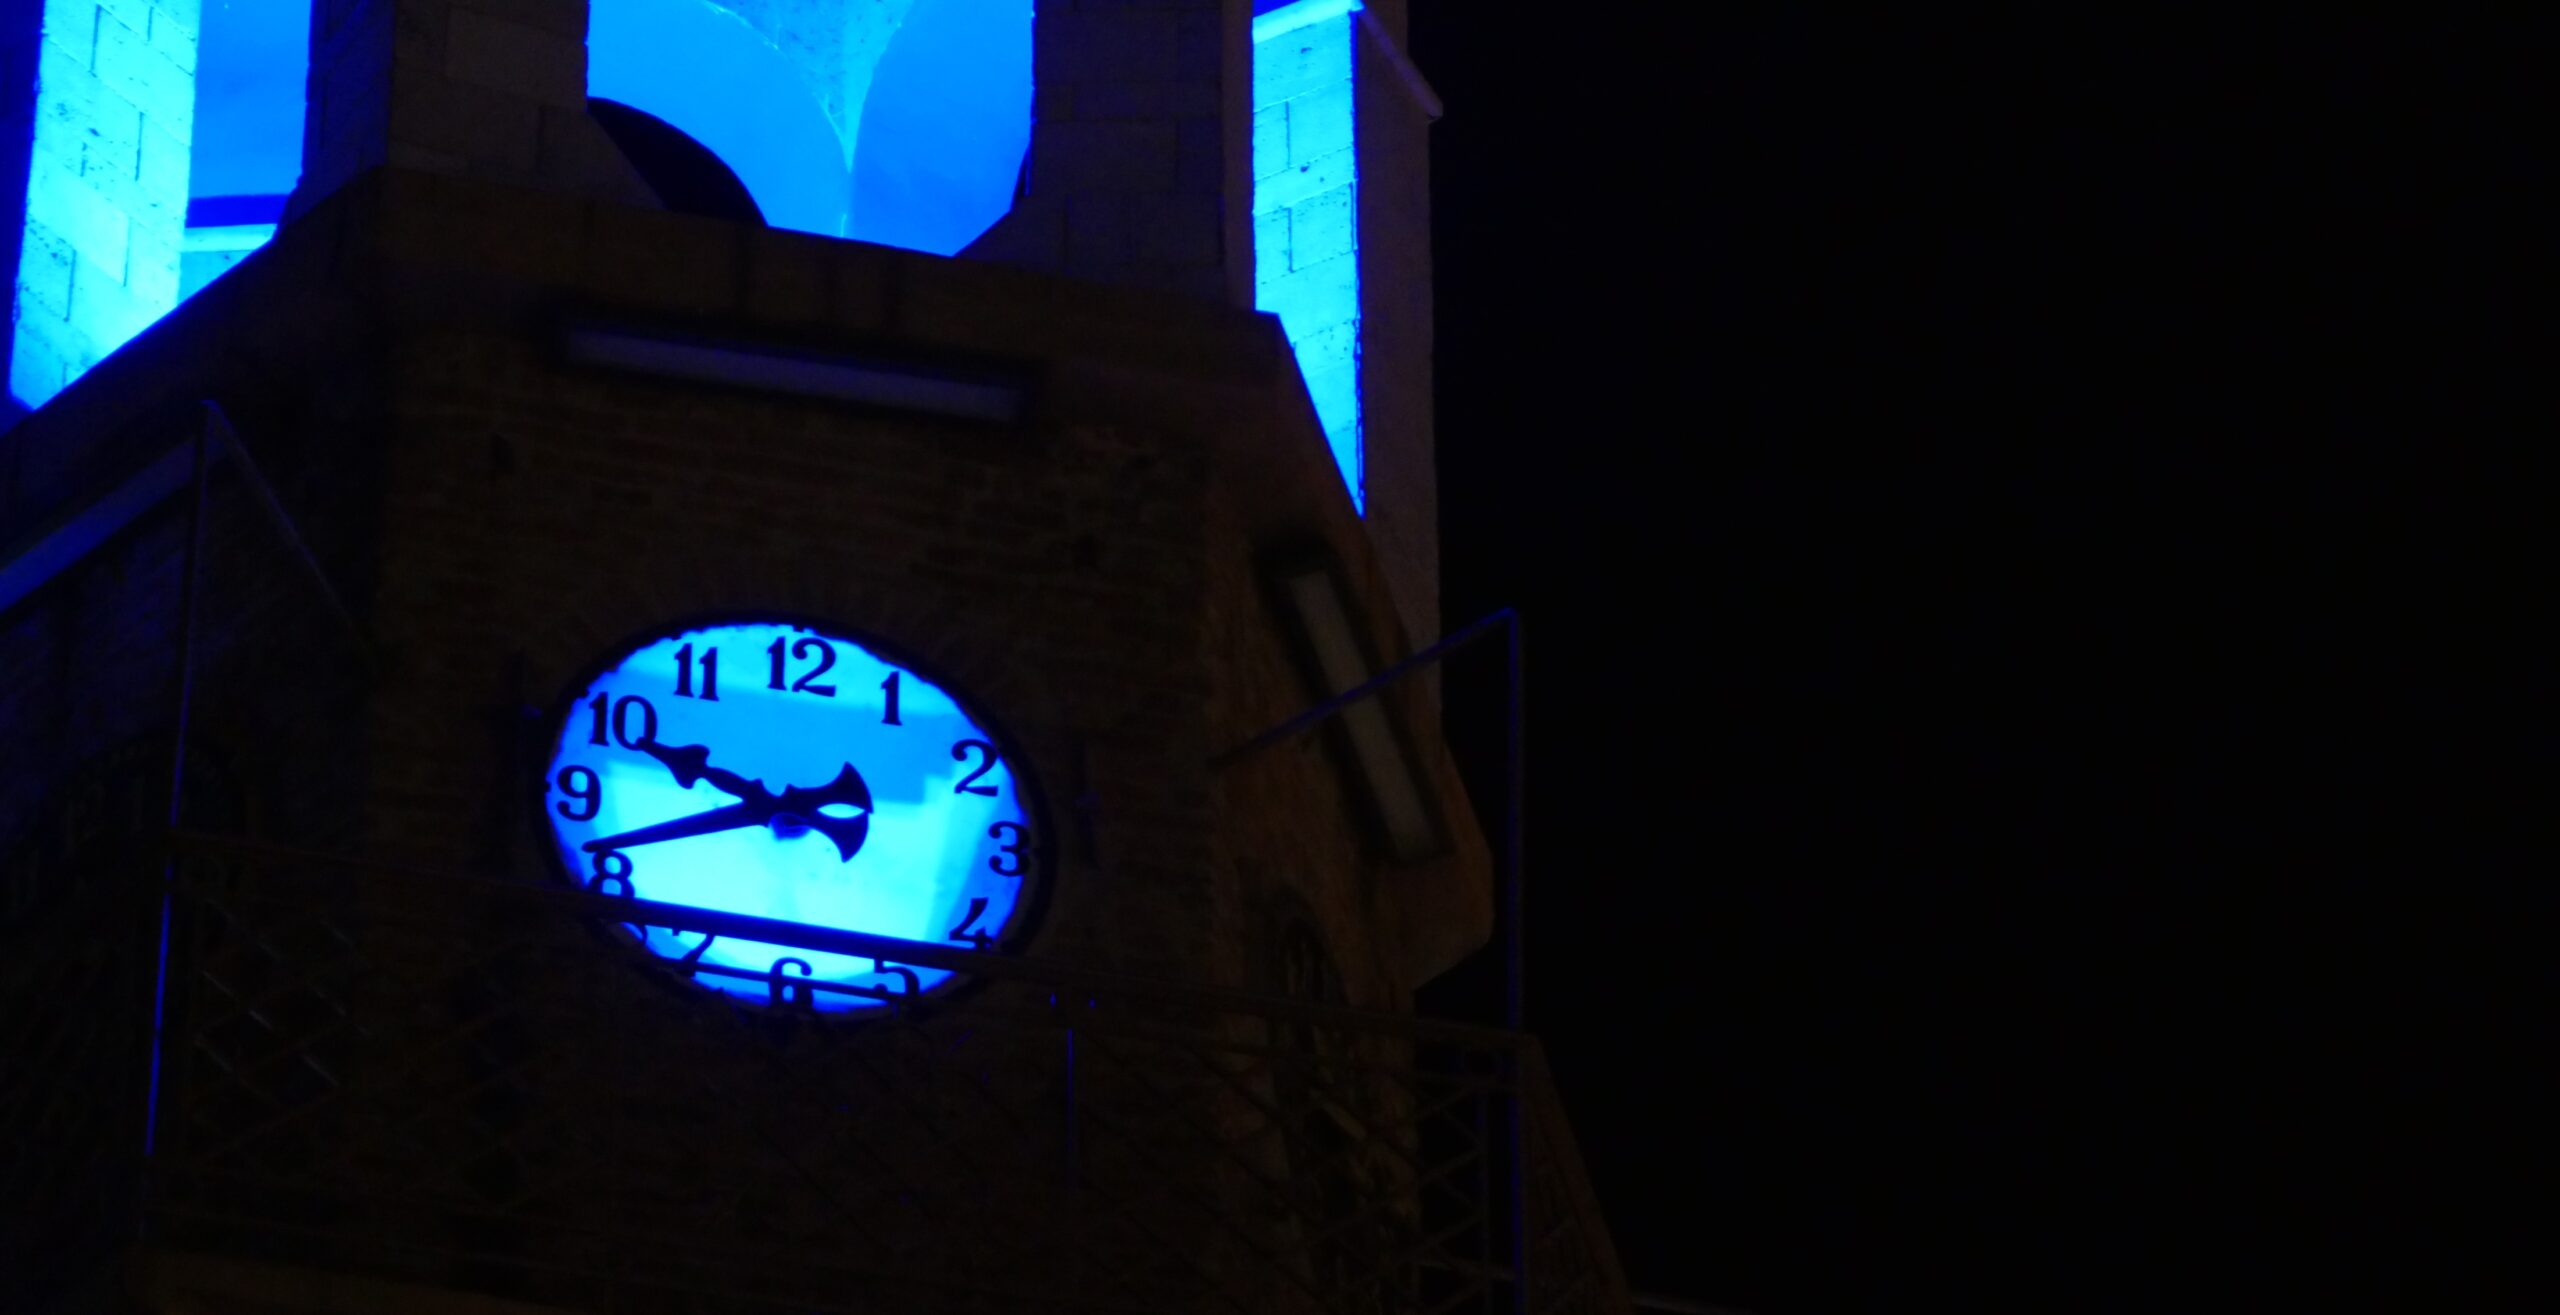 Δήμος Γρεβενών: Φωτίζουμε μπλε το Ρολόι και το Δημαρχείο μας για την Παγκόσμια Ημέρα Ευχής – Το βράδυ του Σαββάτου 29 Απριλίου 2023